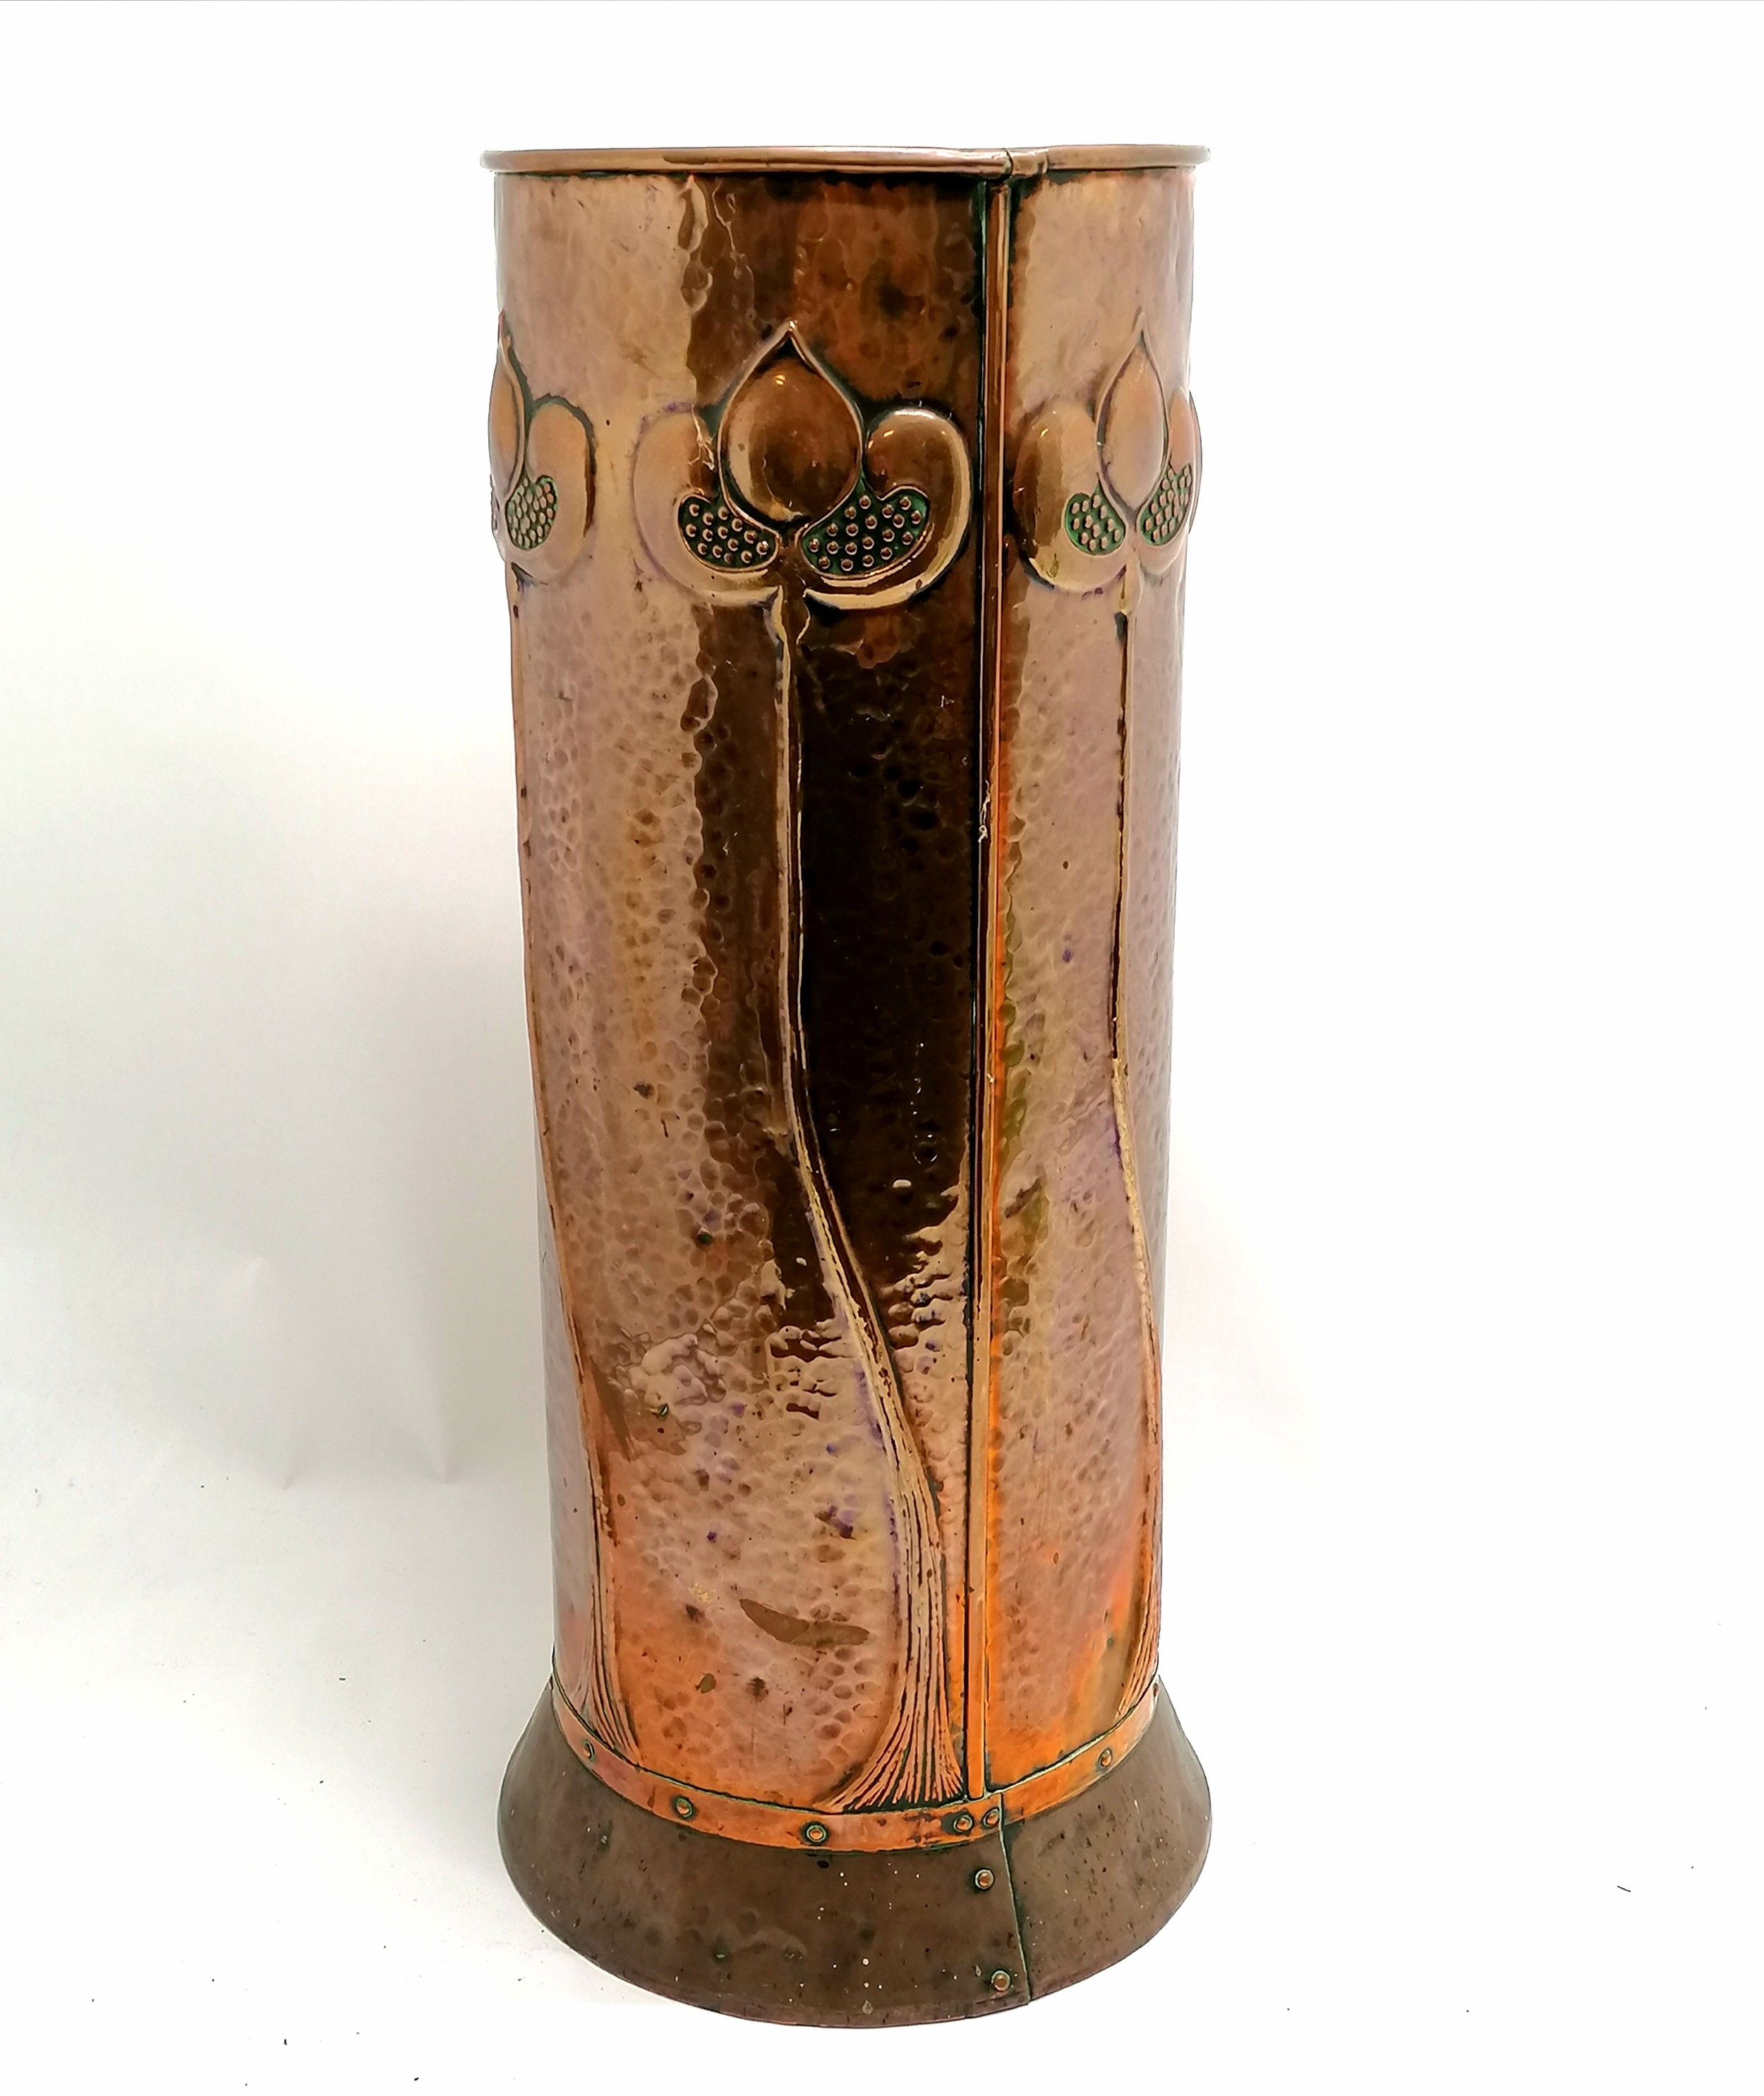 Antique Arts & Crafts / Art Nouveau copper stick stand - 61cm & 23cm diameter top ~ no obvious